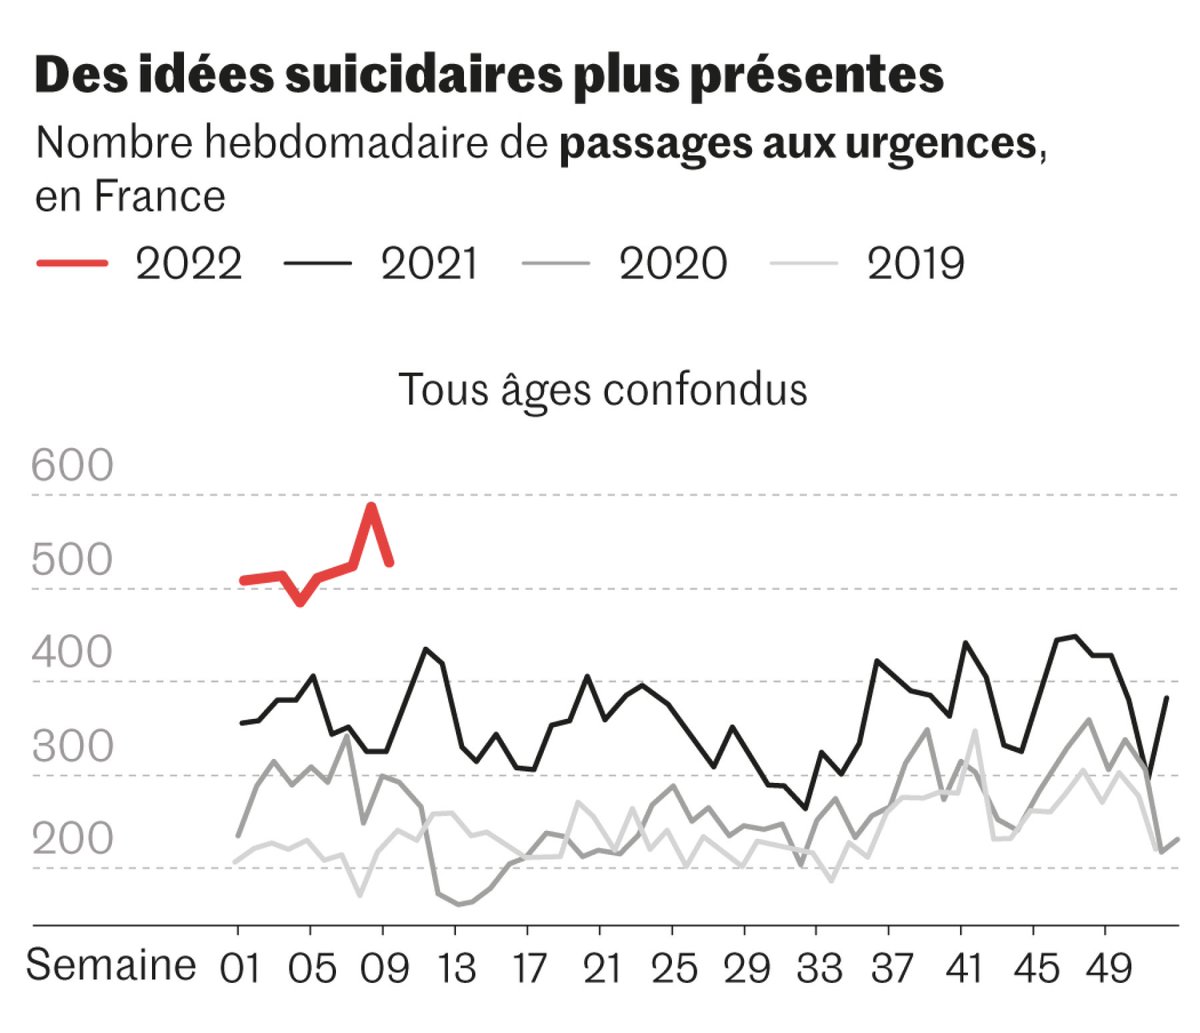 L'enquête de Santé publique France souligne une forte augmentation des pensées suicidaires chez les jeunes adultes depuis le Covid, multipliées par plus de deux depuis 2014 chez les 18-24 ans. 📈💔 #SantéMentale #JeunesAdultes #Covid19